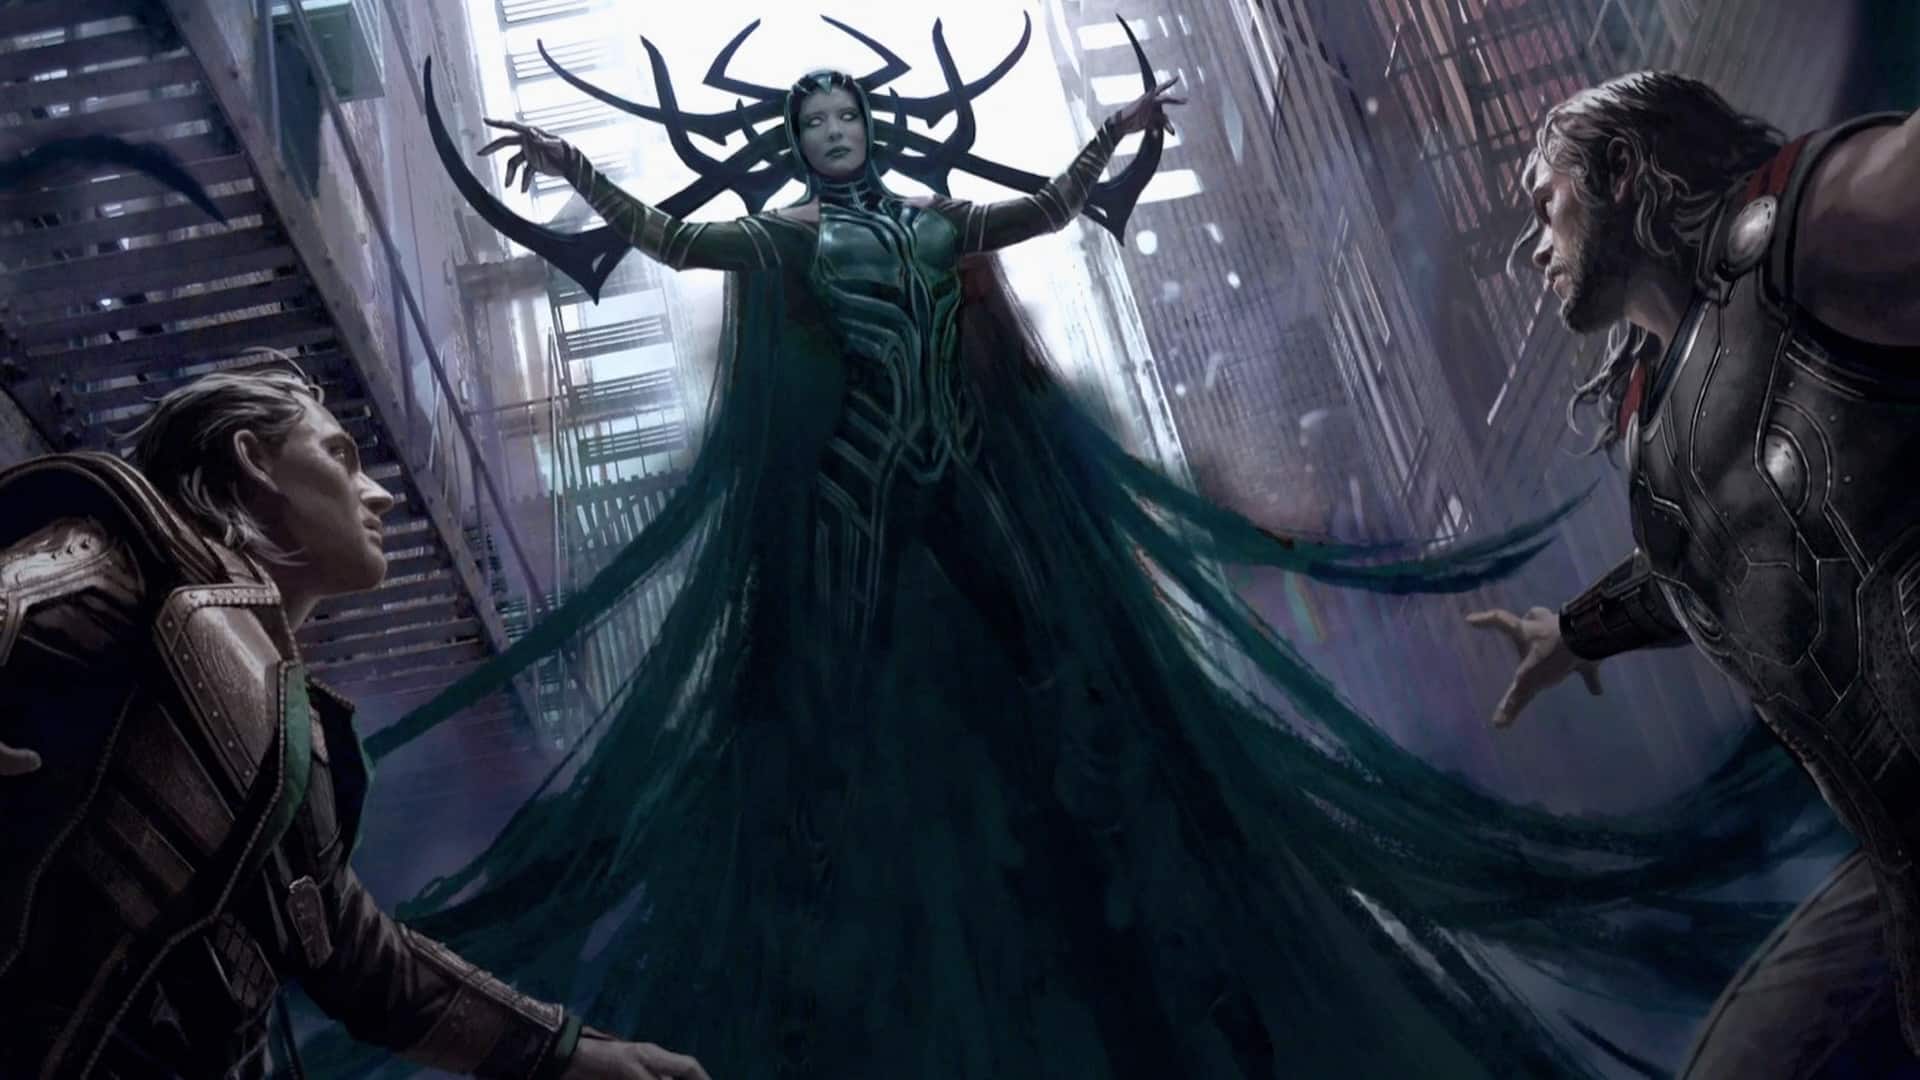  Hela, la diosa de la muerte e hija de Loki